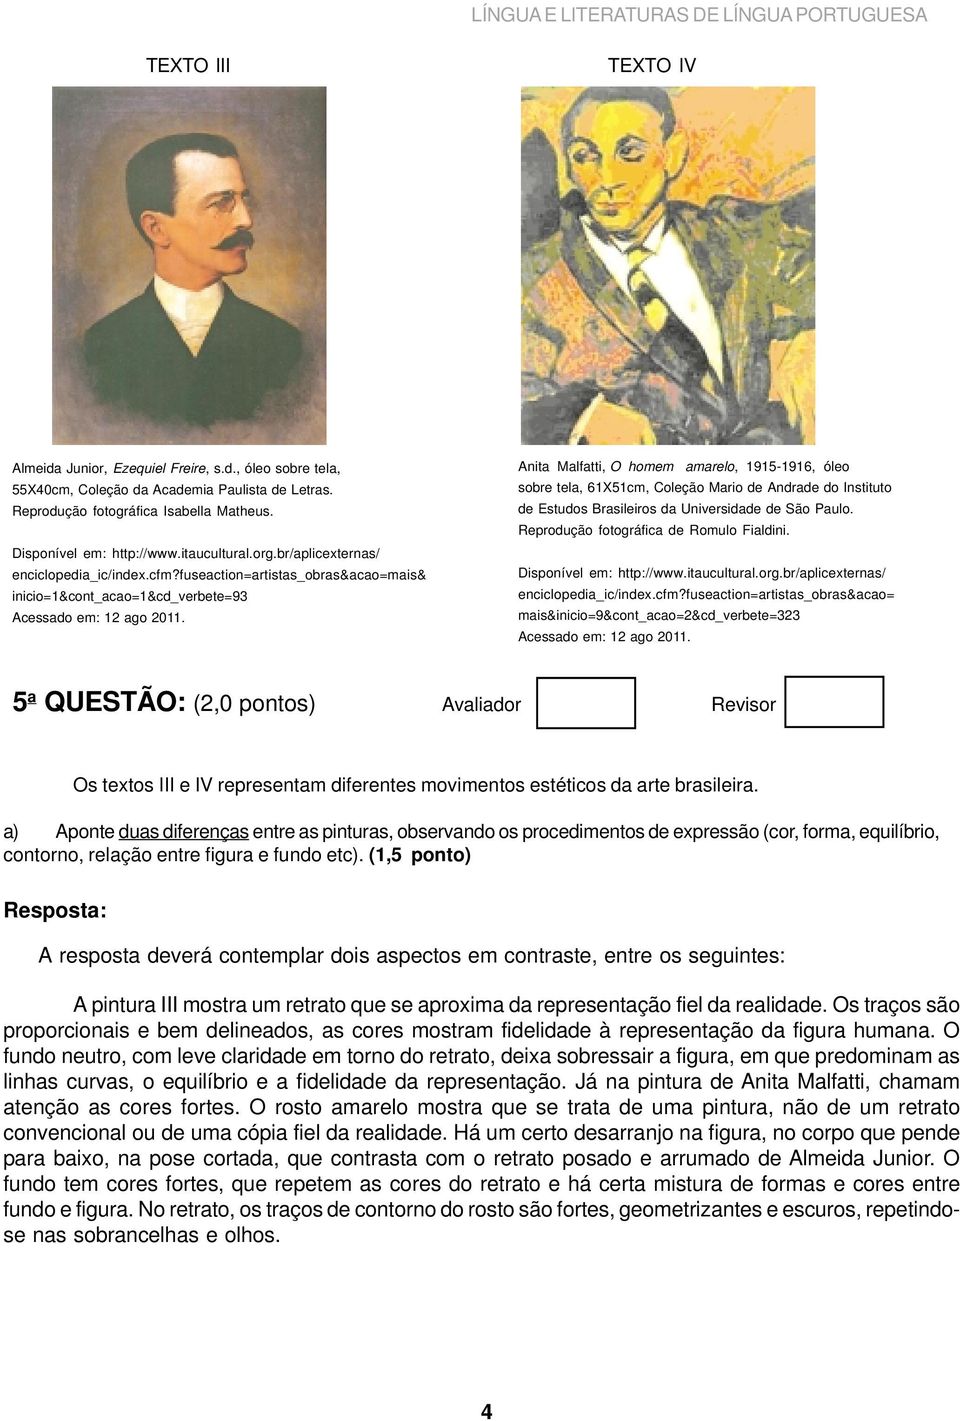 Anita Malfatti, O homem amarelo, 1915-1916, óleo sobre tela, 61X51cm, Coleção Mario de Andrade do Instituto de Estudos Brasileiros da Universidade de São Paulo.